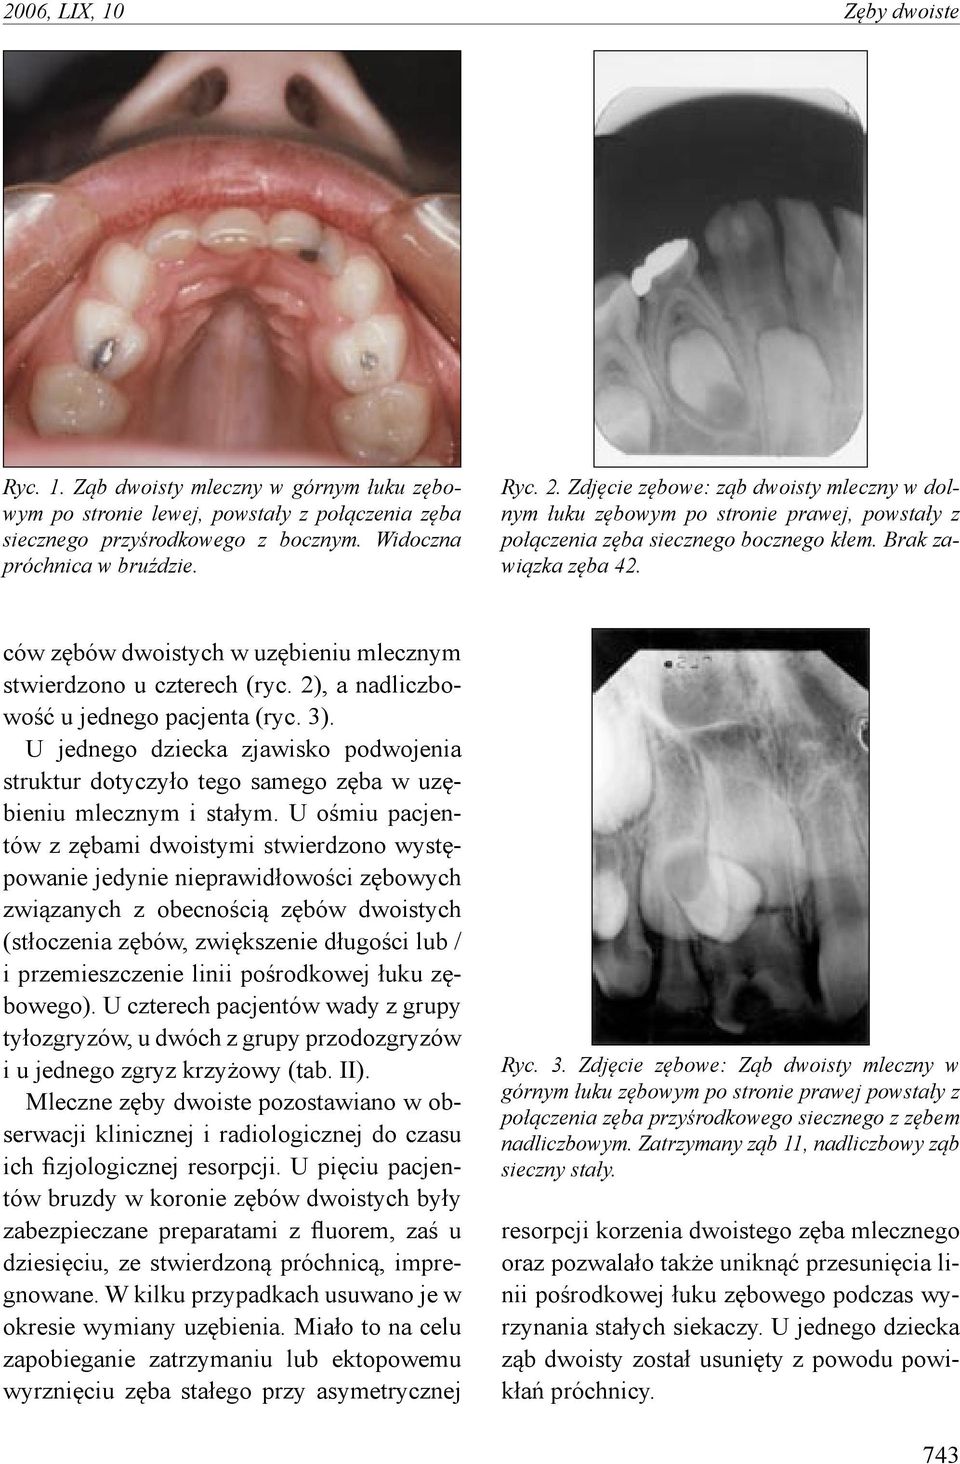 ców zębów dwoistych w uzębieniu mlecznym stwierdzono u czterech (ryc. 2), a nadliczbowość u jednego pacjenta (ryc. 3).